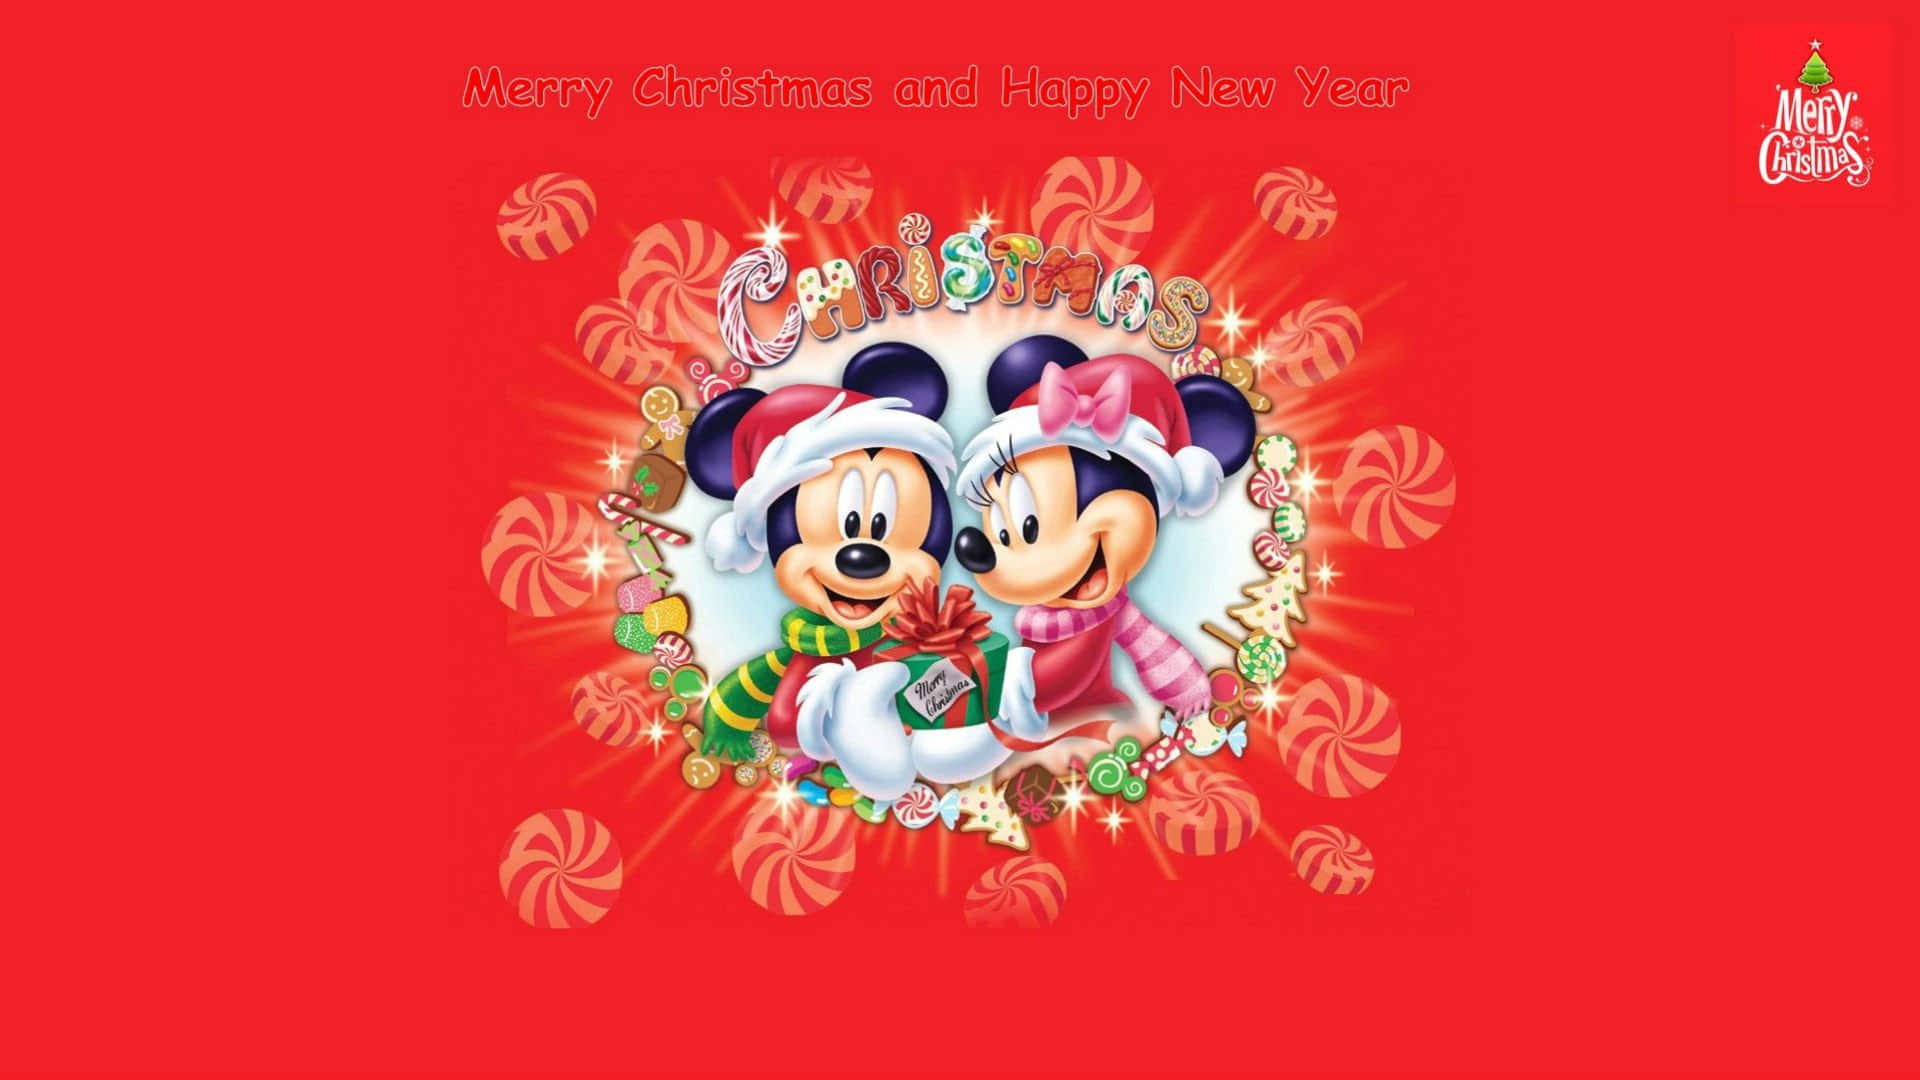 'feieredas Neue Jahr Mit Mickey Mouse' Wallpaper